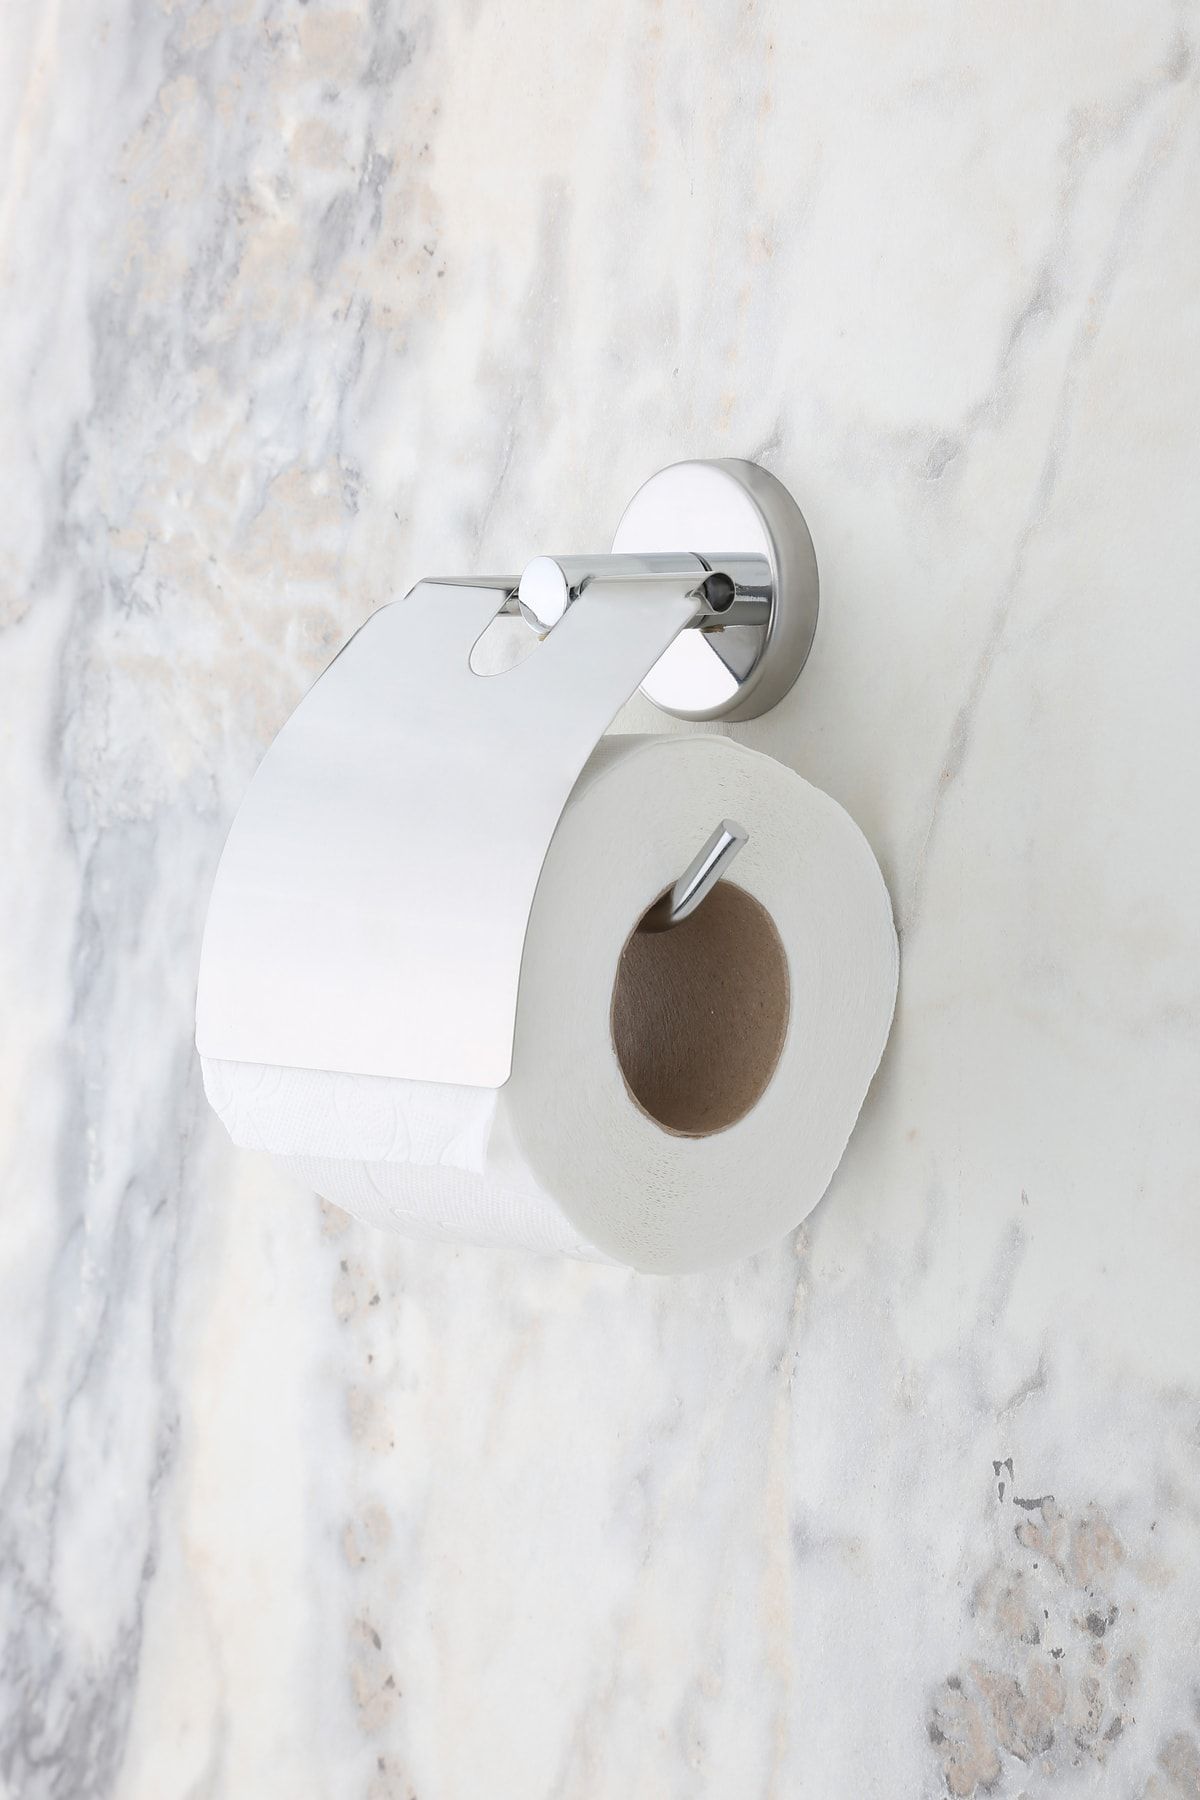 MultiStore Krom Geniş Kapaklı Tuvalet Kağıtlığı Wc Kağıtlık Tuvalet Kağıdı Askısı